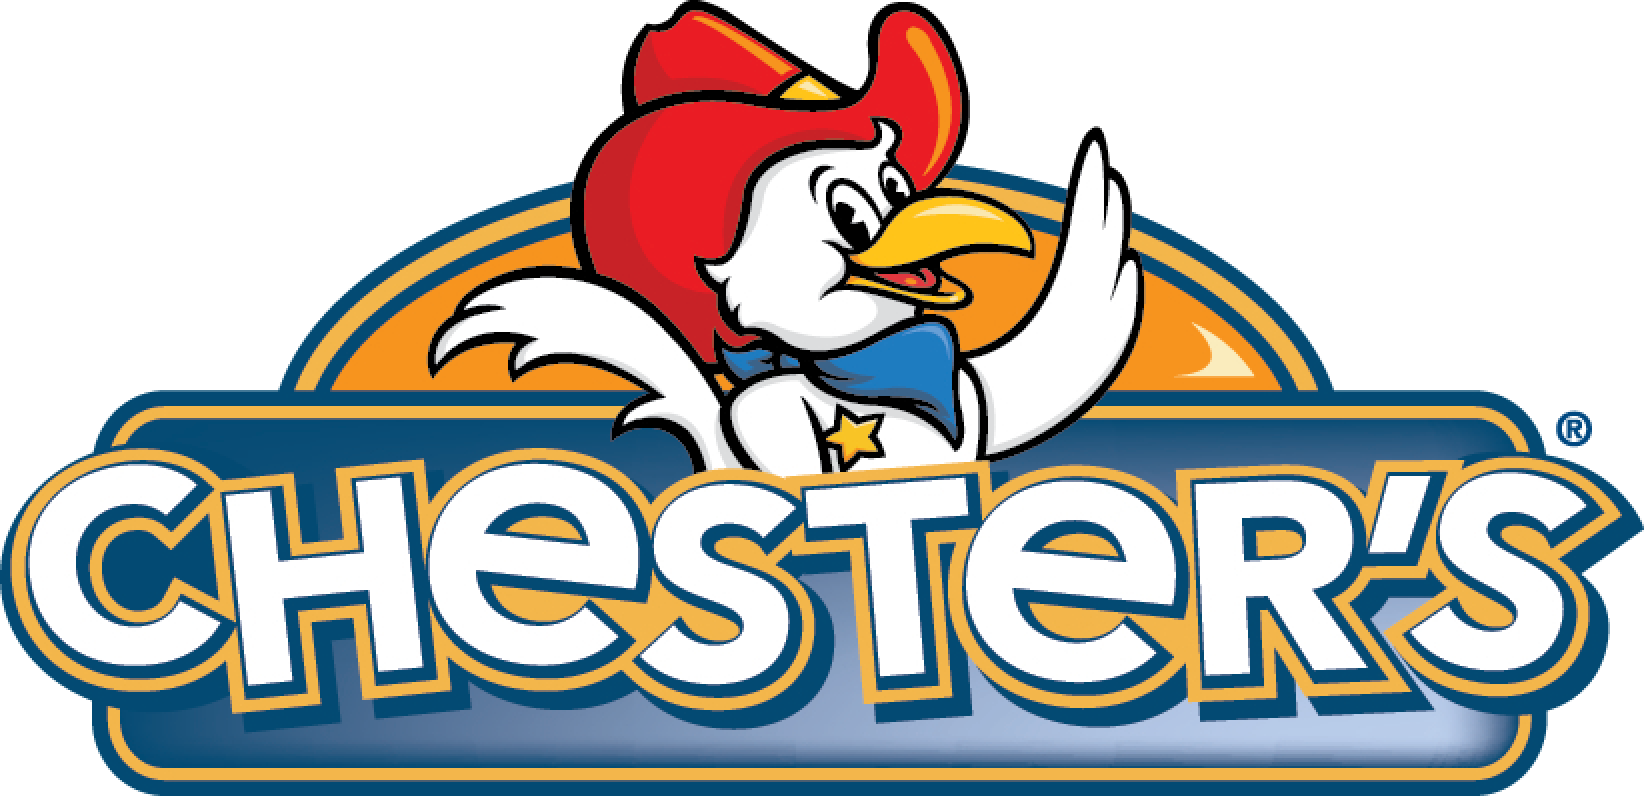 Chicken Chef Steinbach - Chester Chicken (1644x796)